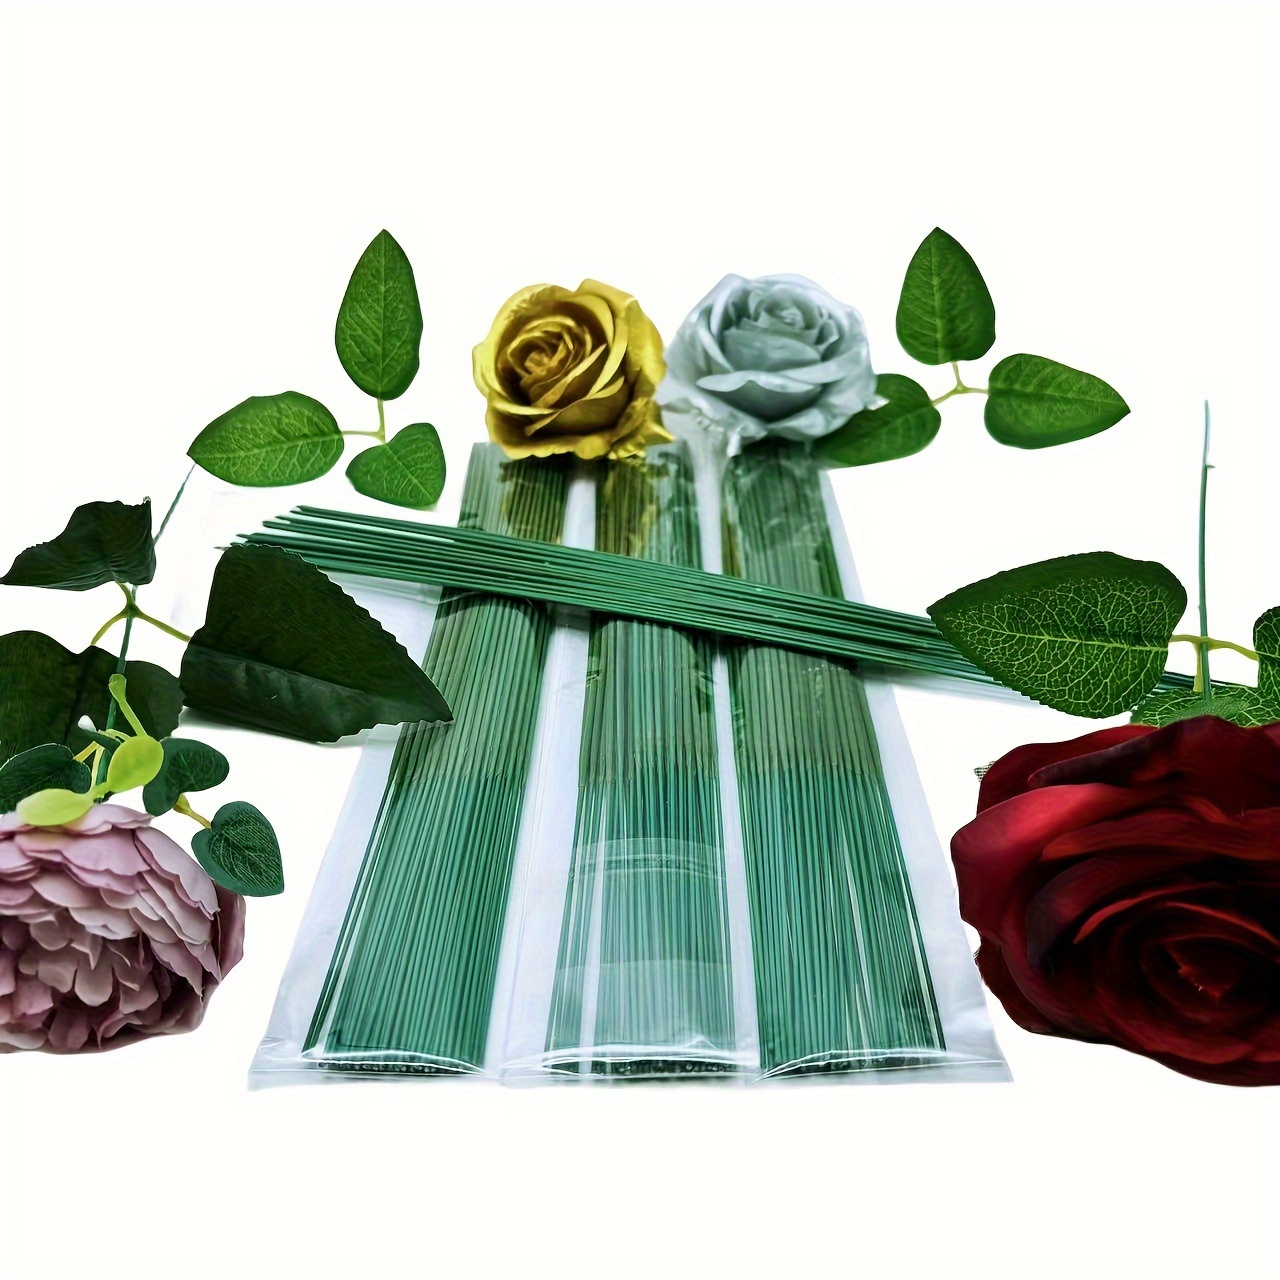 100 pcs Plastic Floral Stem 6.69 inch/17cm, Artificial Flower Rod Flower  Stem Wire Making Accessories, DIY Crafts Bouquet Stem Flower Arrangements